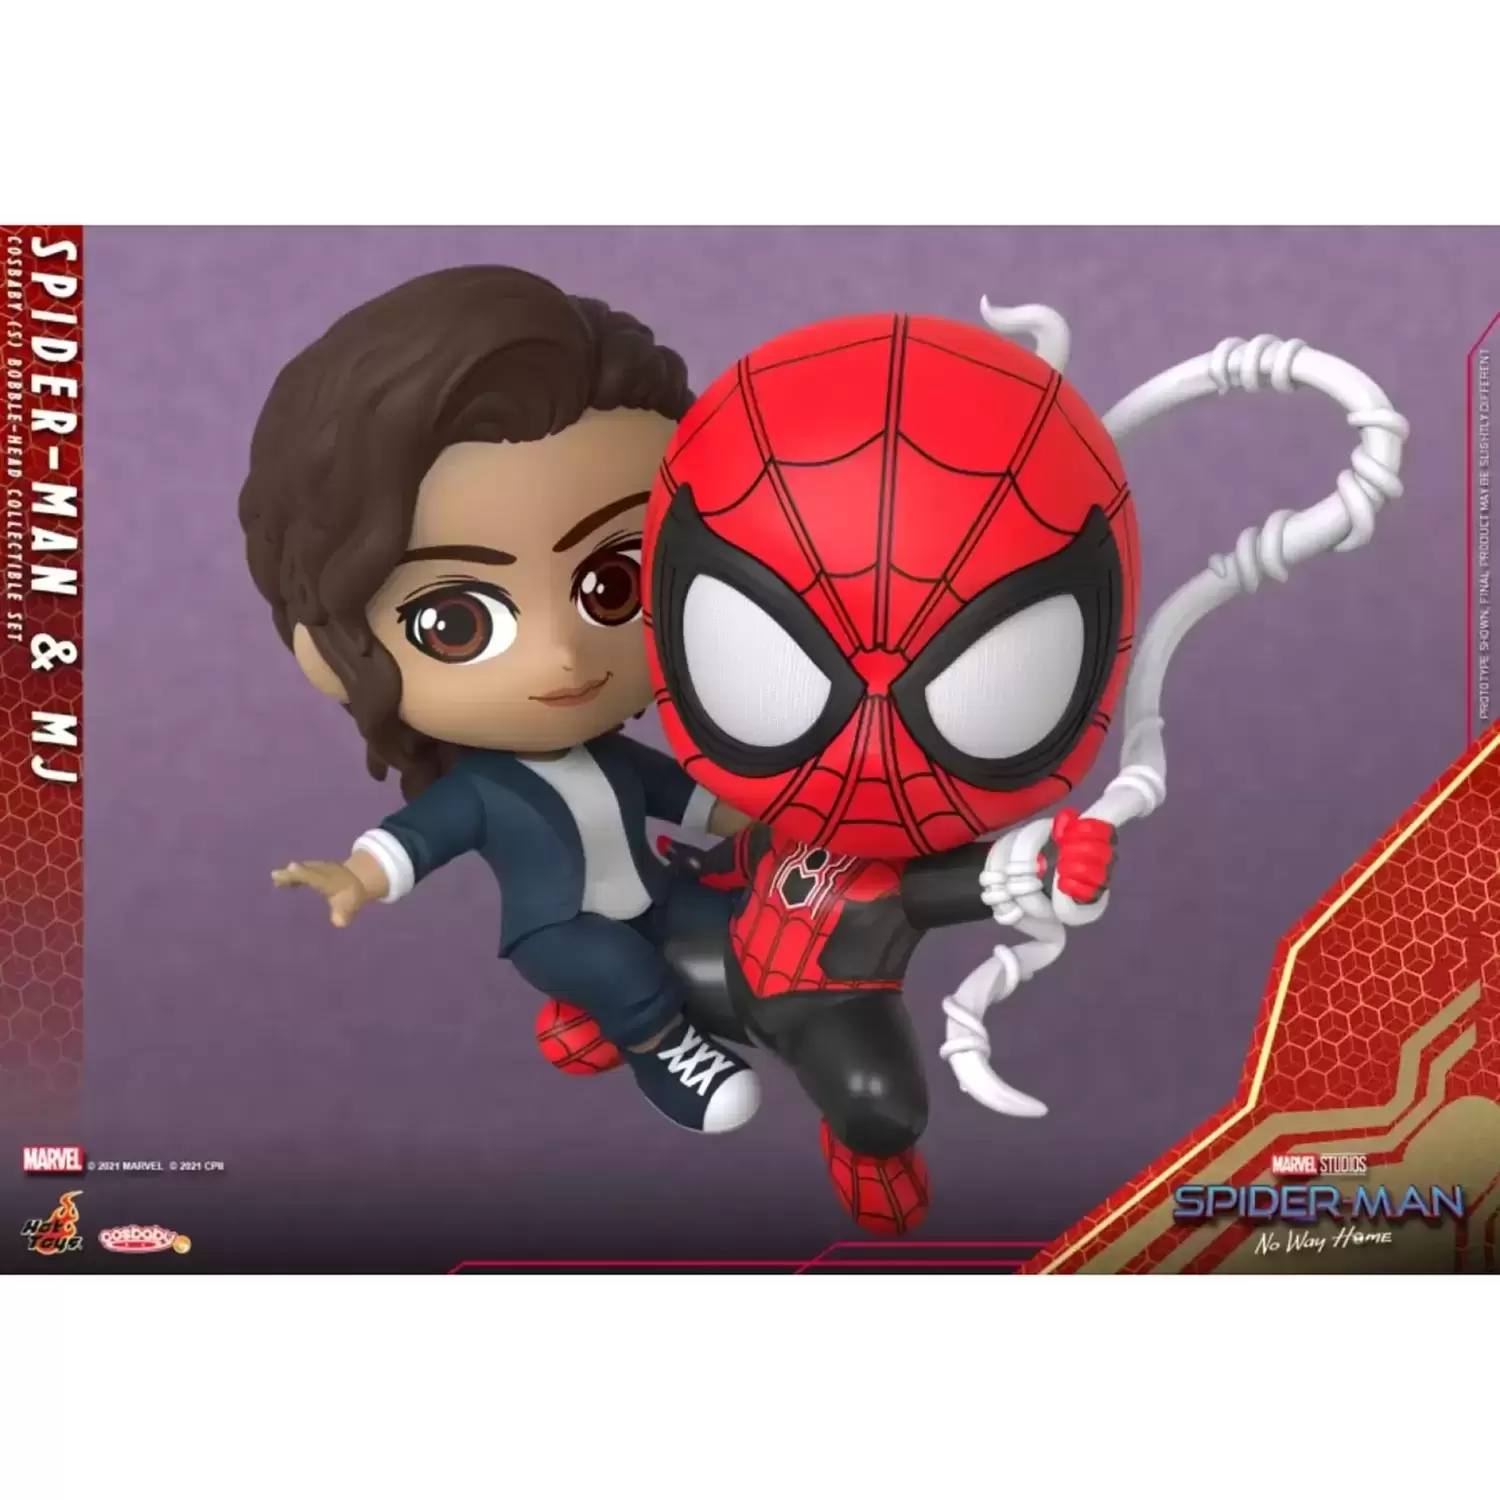 Cosbaby Figures - Spider-Man: No Way Home - Spider-Man & MJ